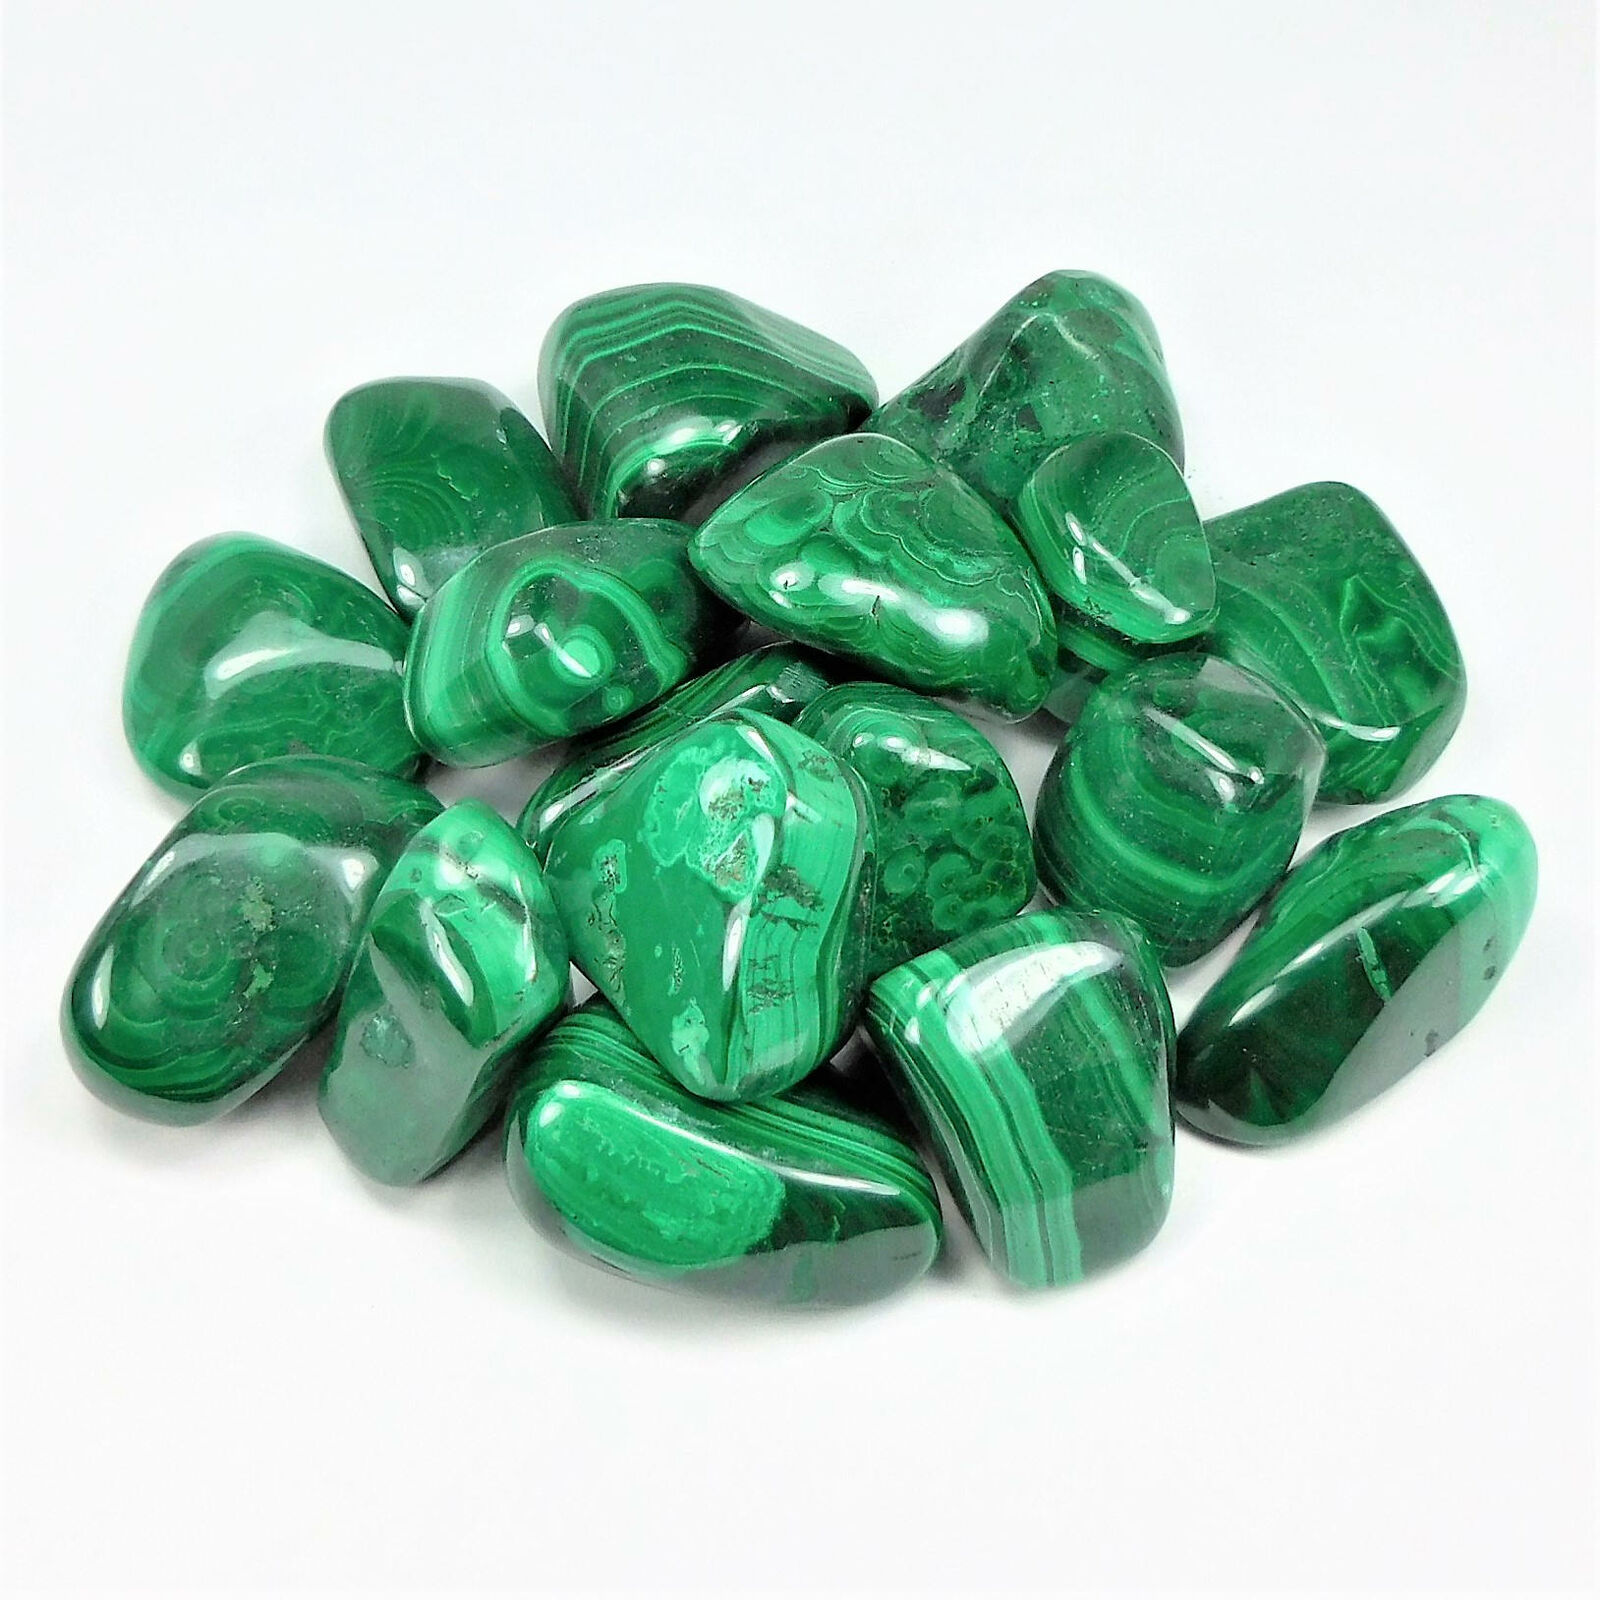 Bulk Wholesale Lot 1 LB - Malachite - One Pound Tumbled Polished Stones